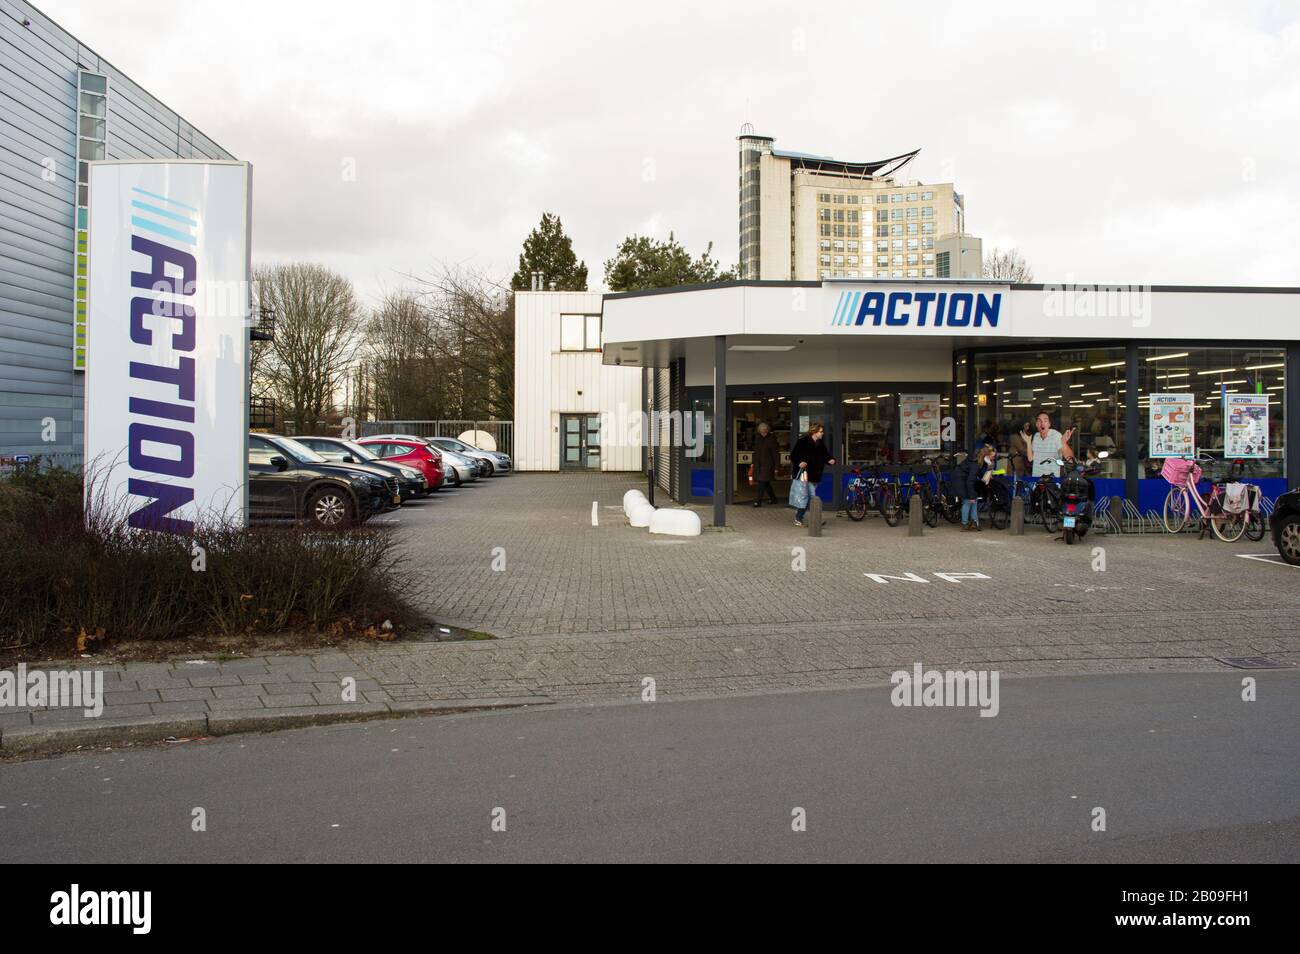 Arnhem, Pays-Bas - 12 Février 2020: Magasin D'Action. Action est une chaîne  internationale de magasins de rabais Photo Stock - Alamy